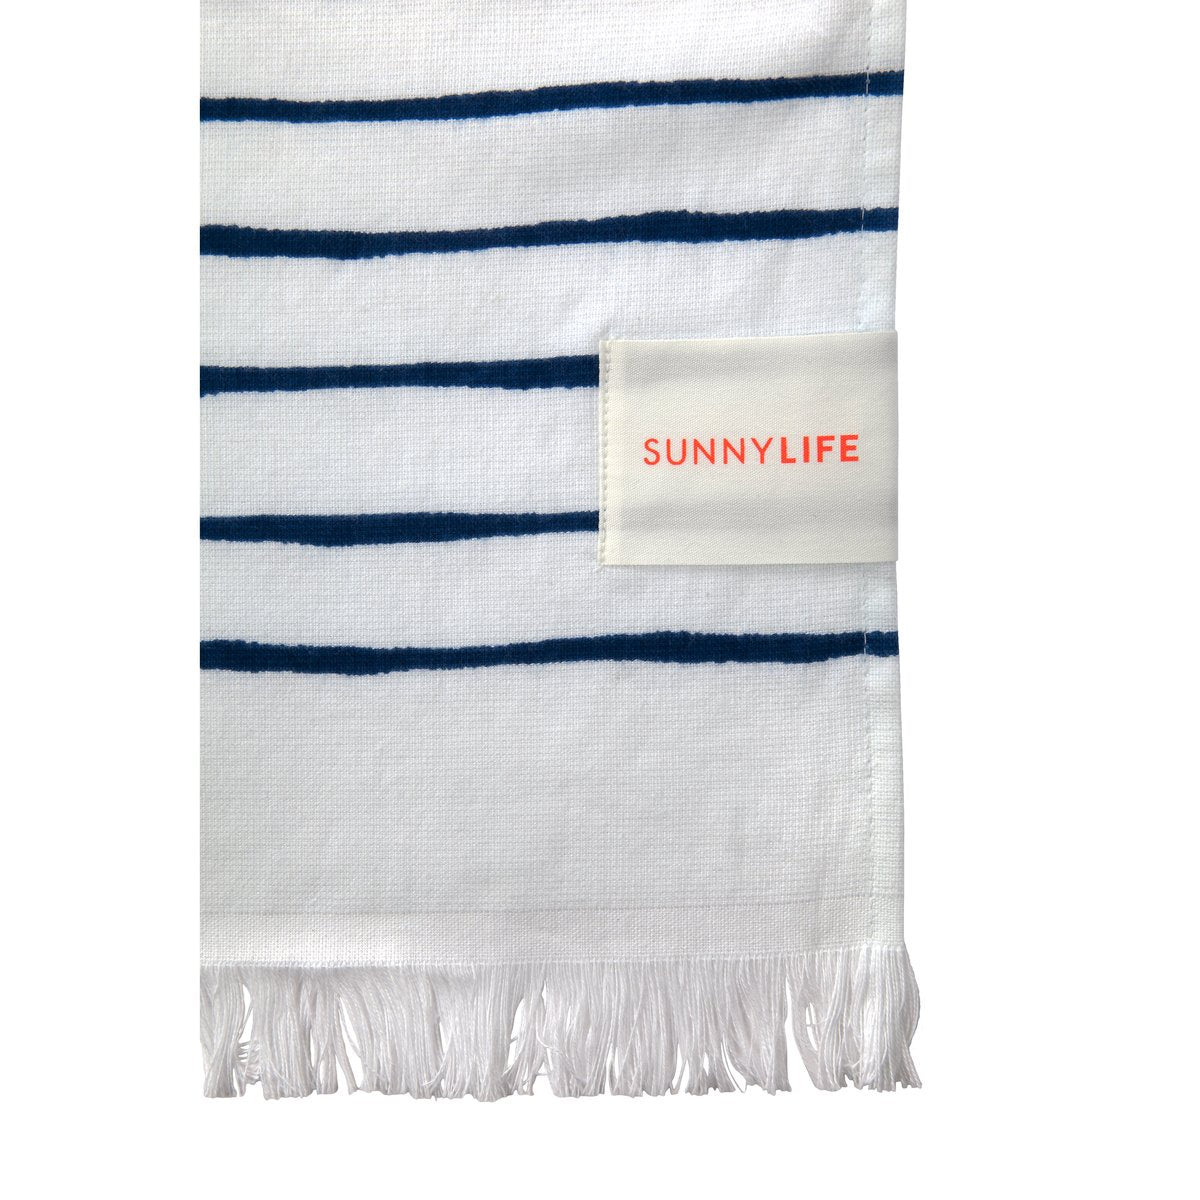 Nouveau Bleu Turkish Towel